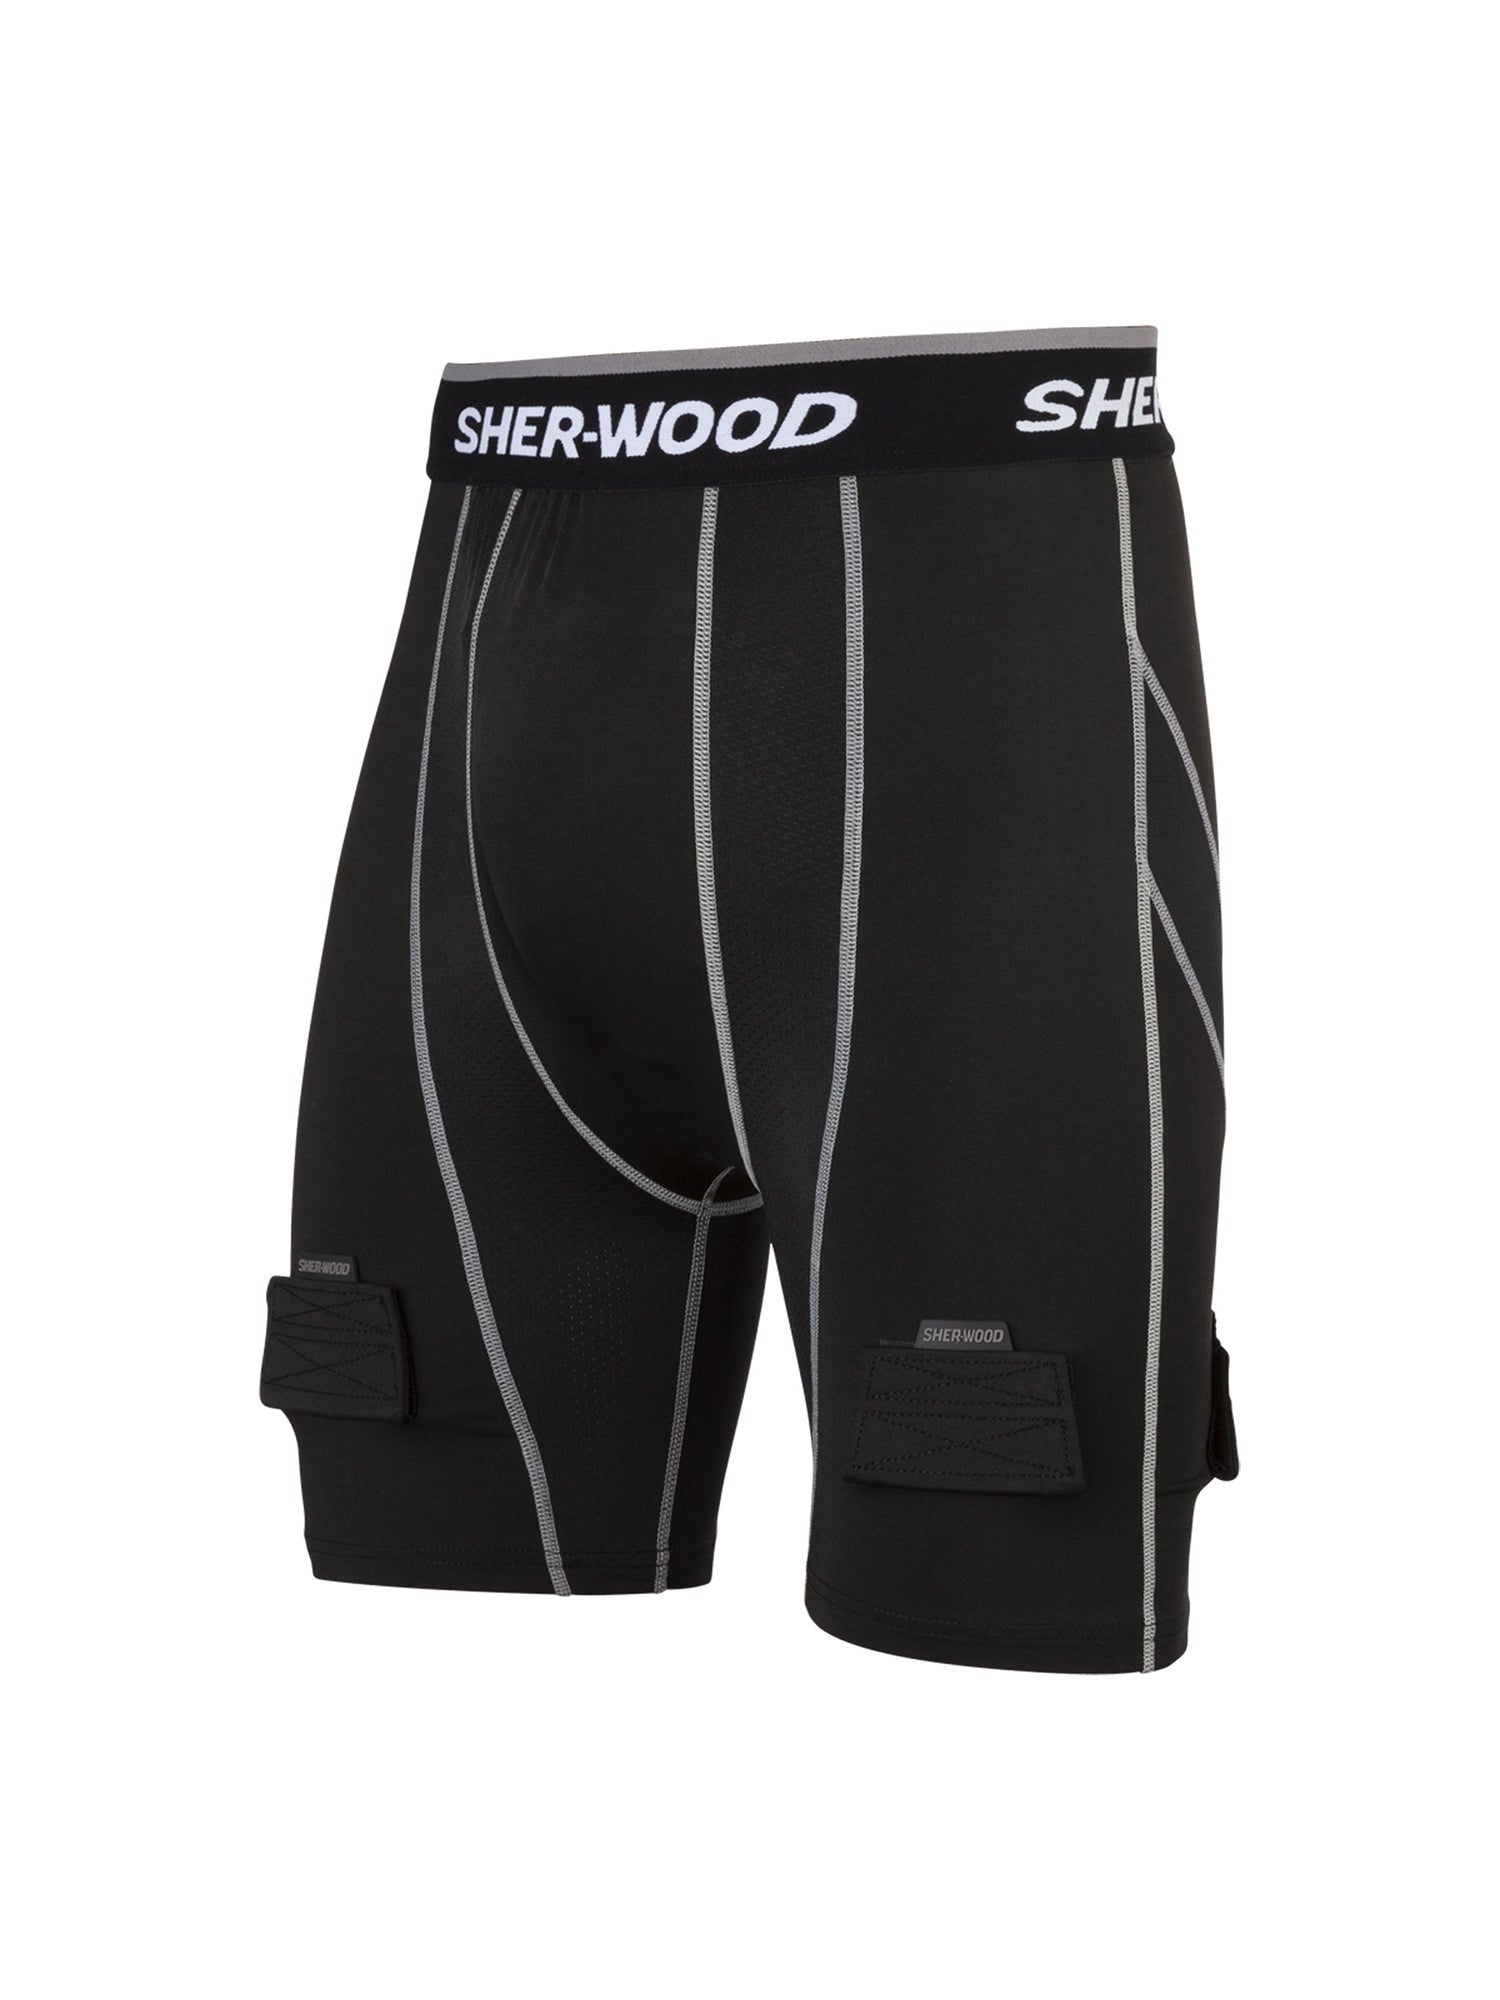 Sher-Wood Compression Senior Jock Short – SHERWOOD™